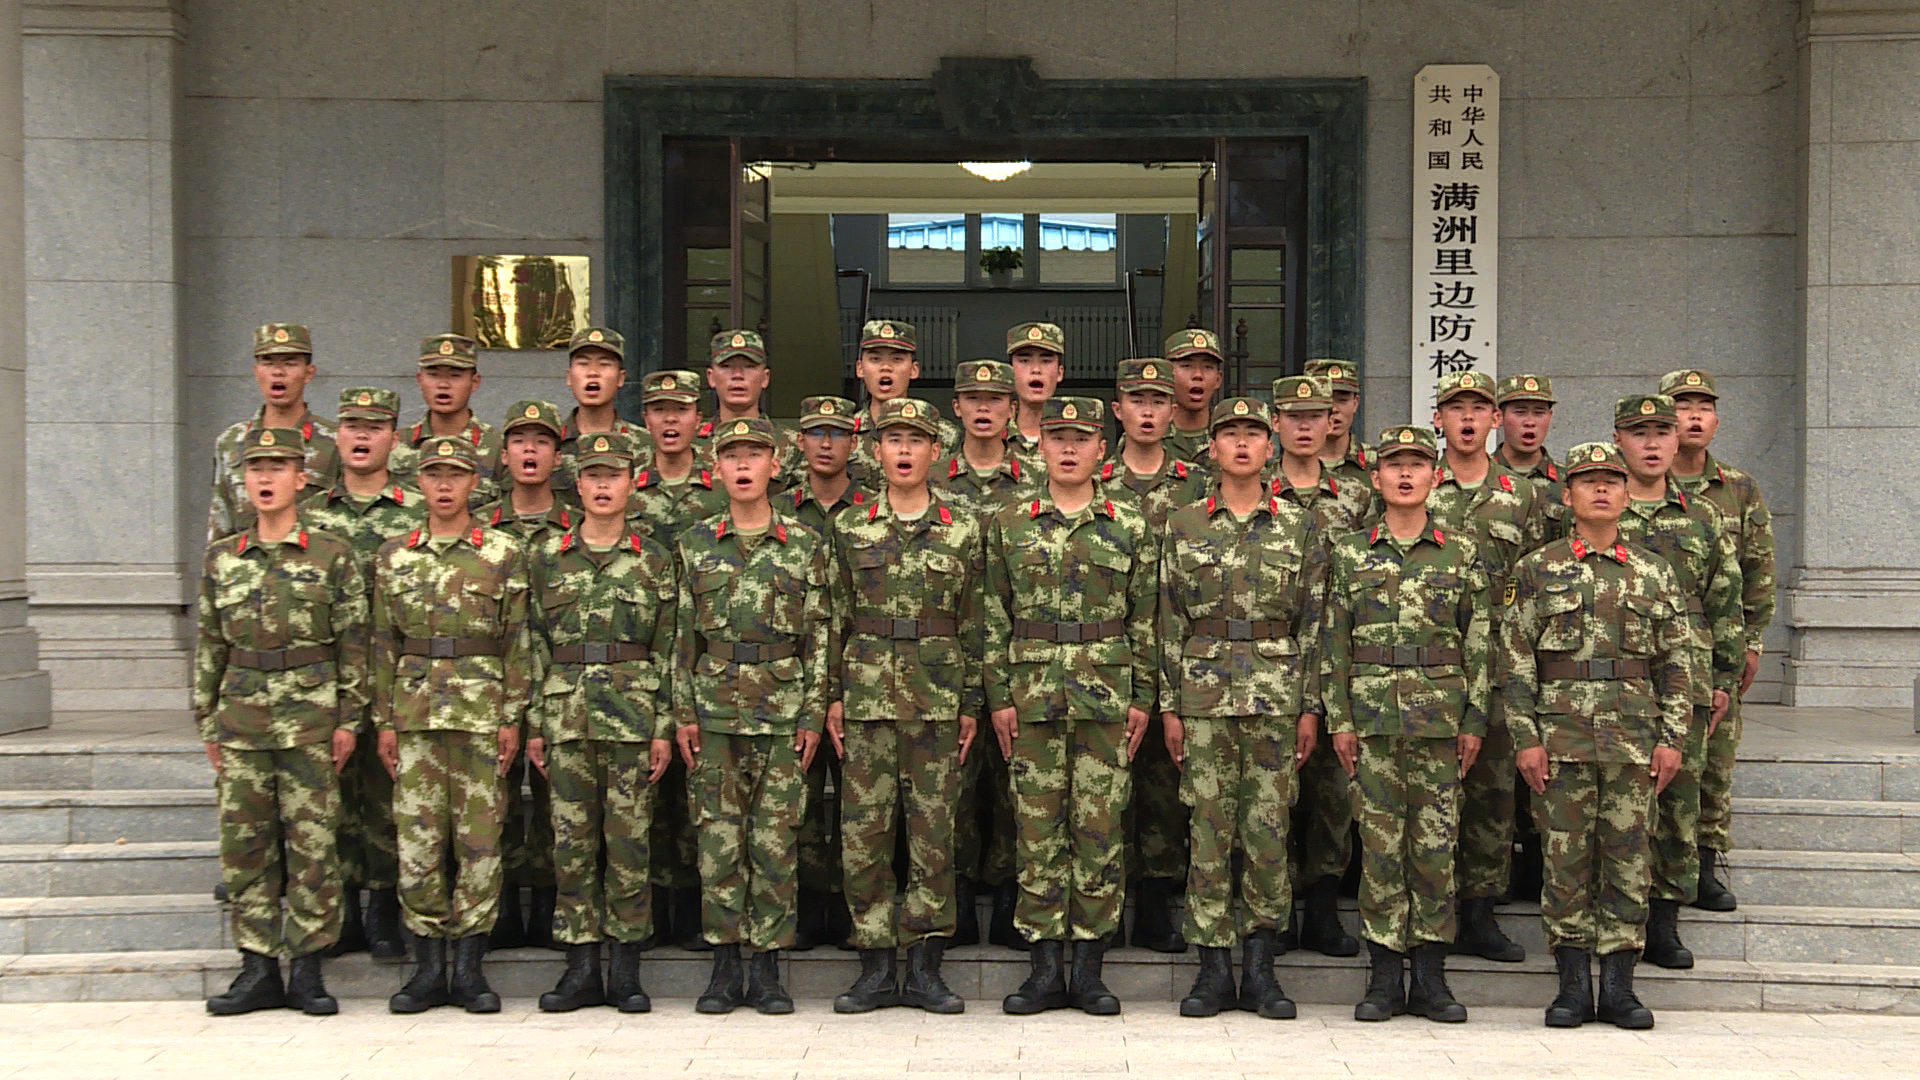 电影频道主播走近边防战士生活 向中国军人敬礼